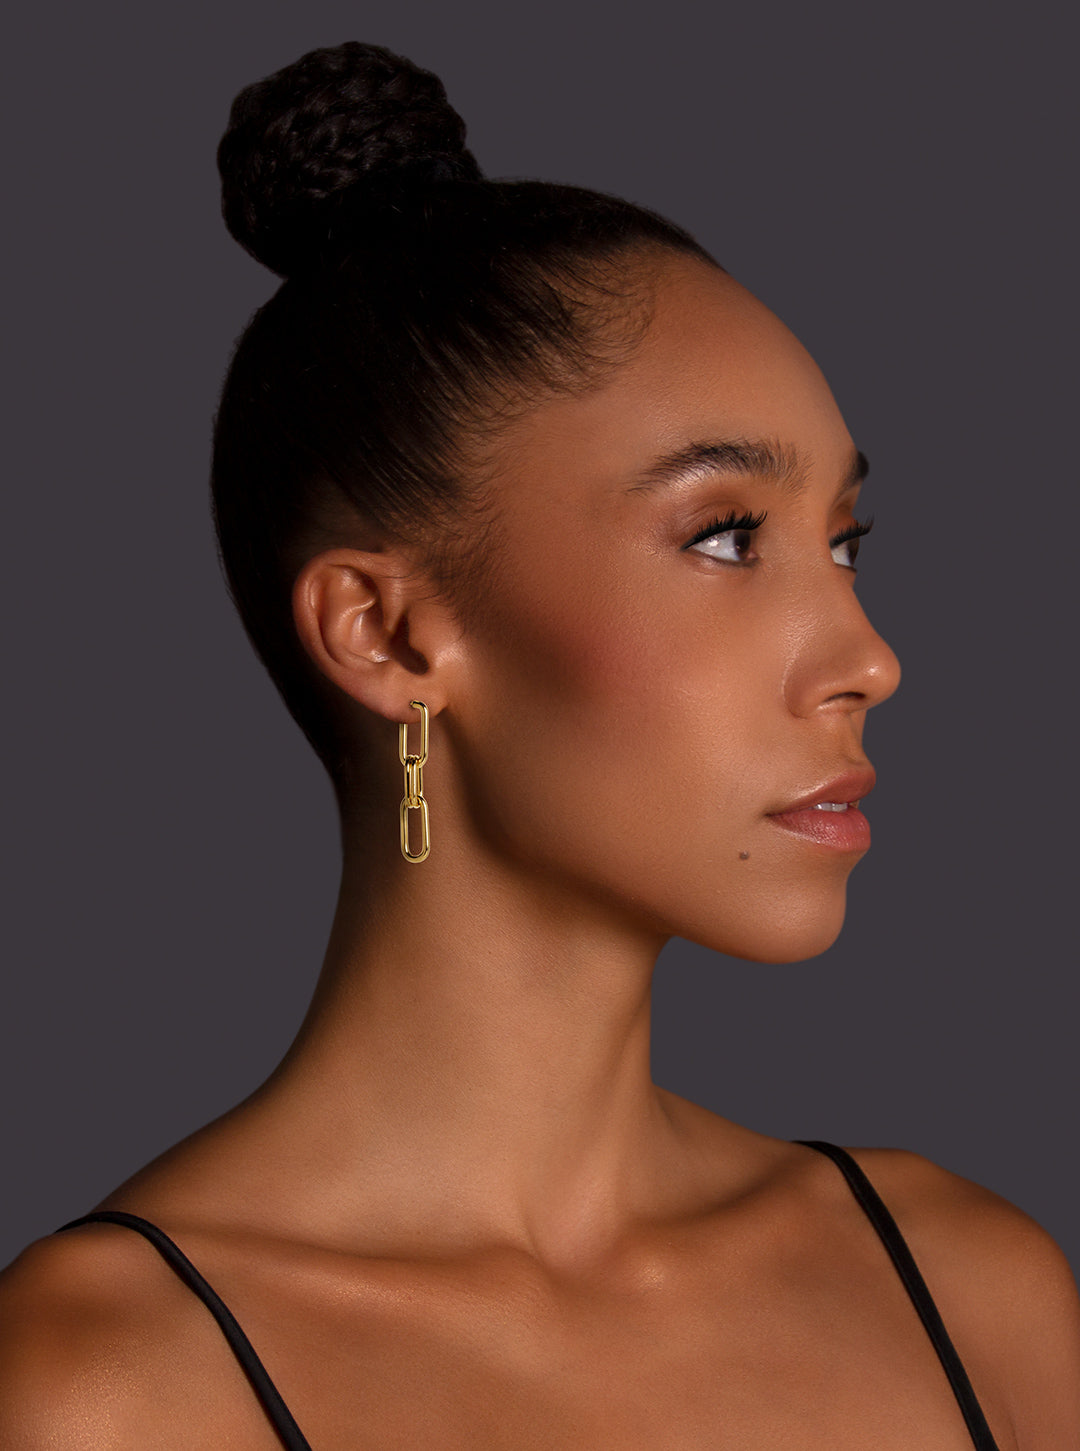 paper clip style earrings in 14 karat gold